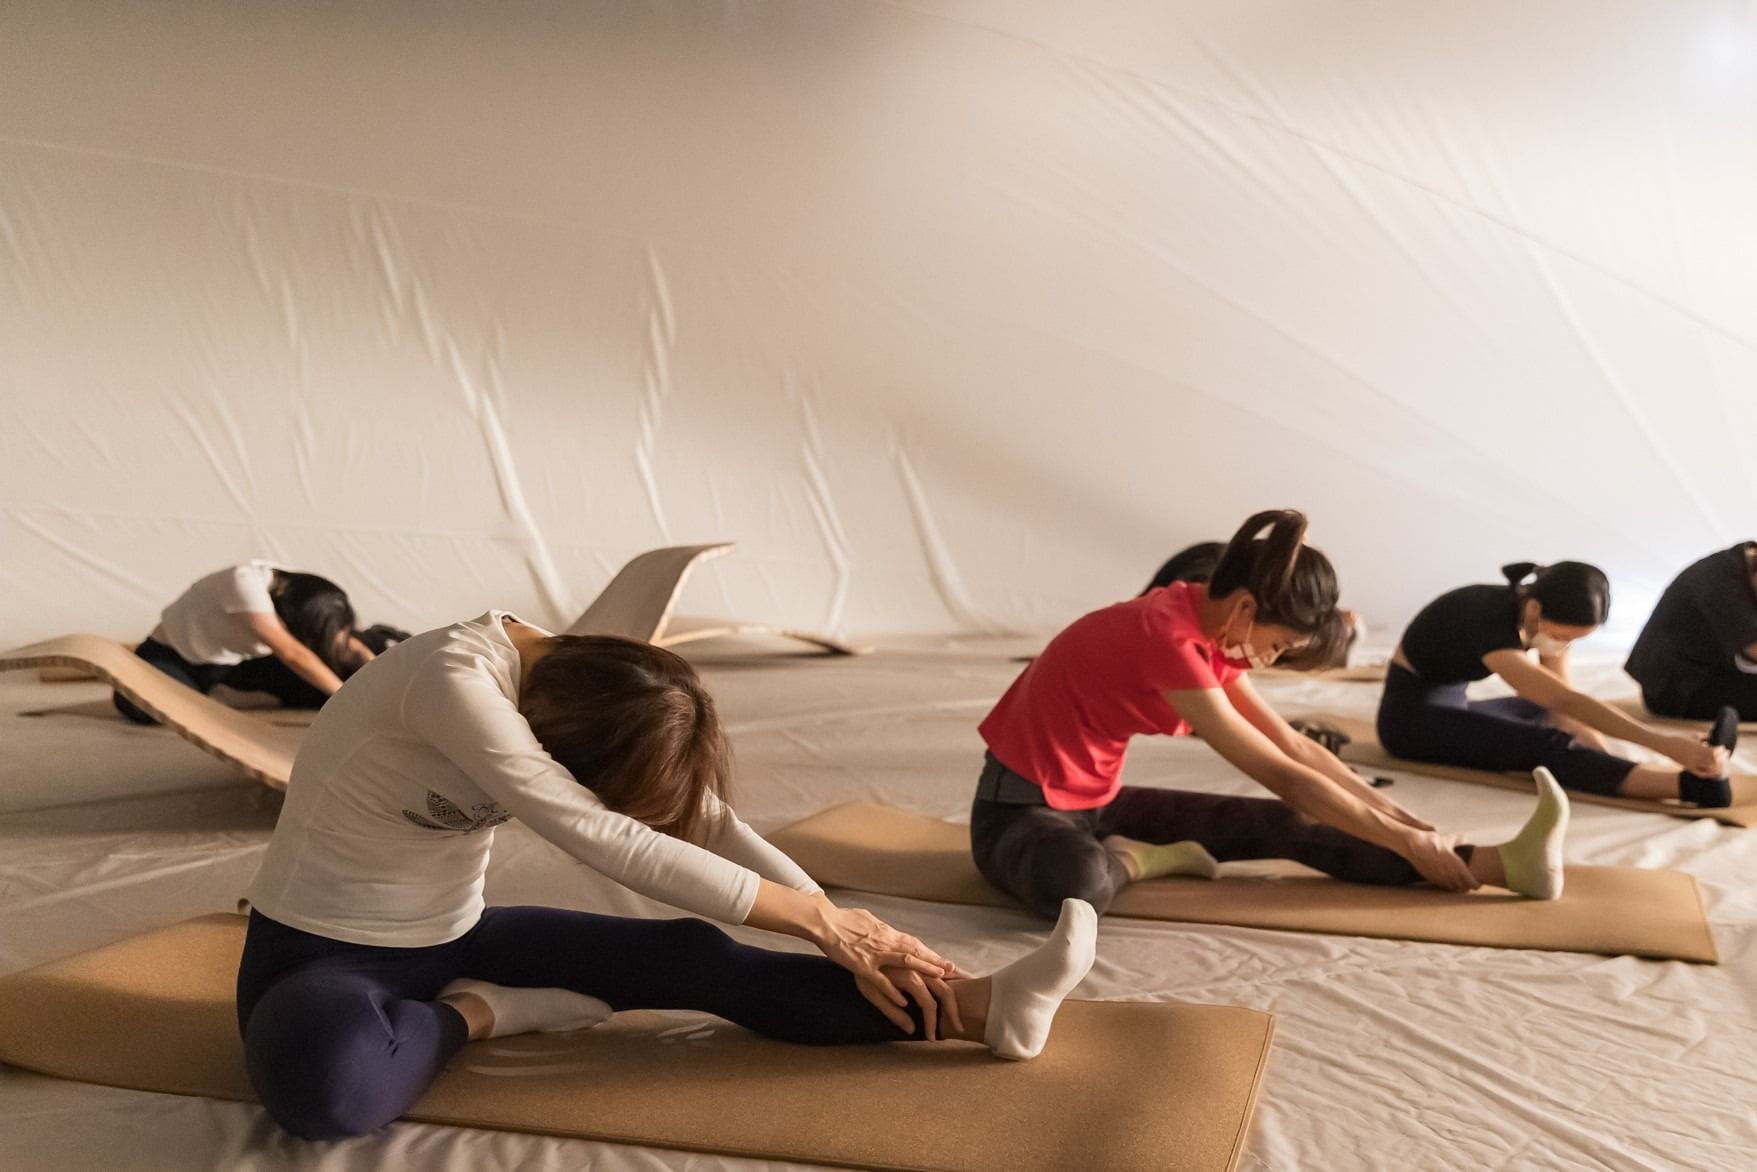 忠泰美術館《感知現場》於展期間推出瑜珈、表演藝術、舞蹈音樂特別企劃 ©忠泰美術館